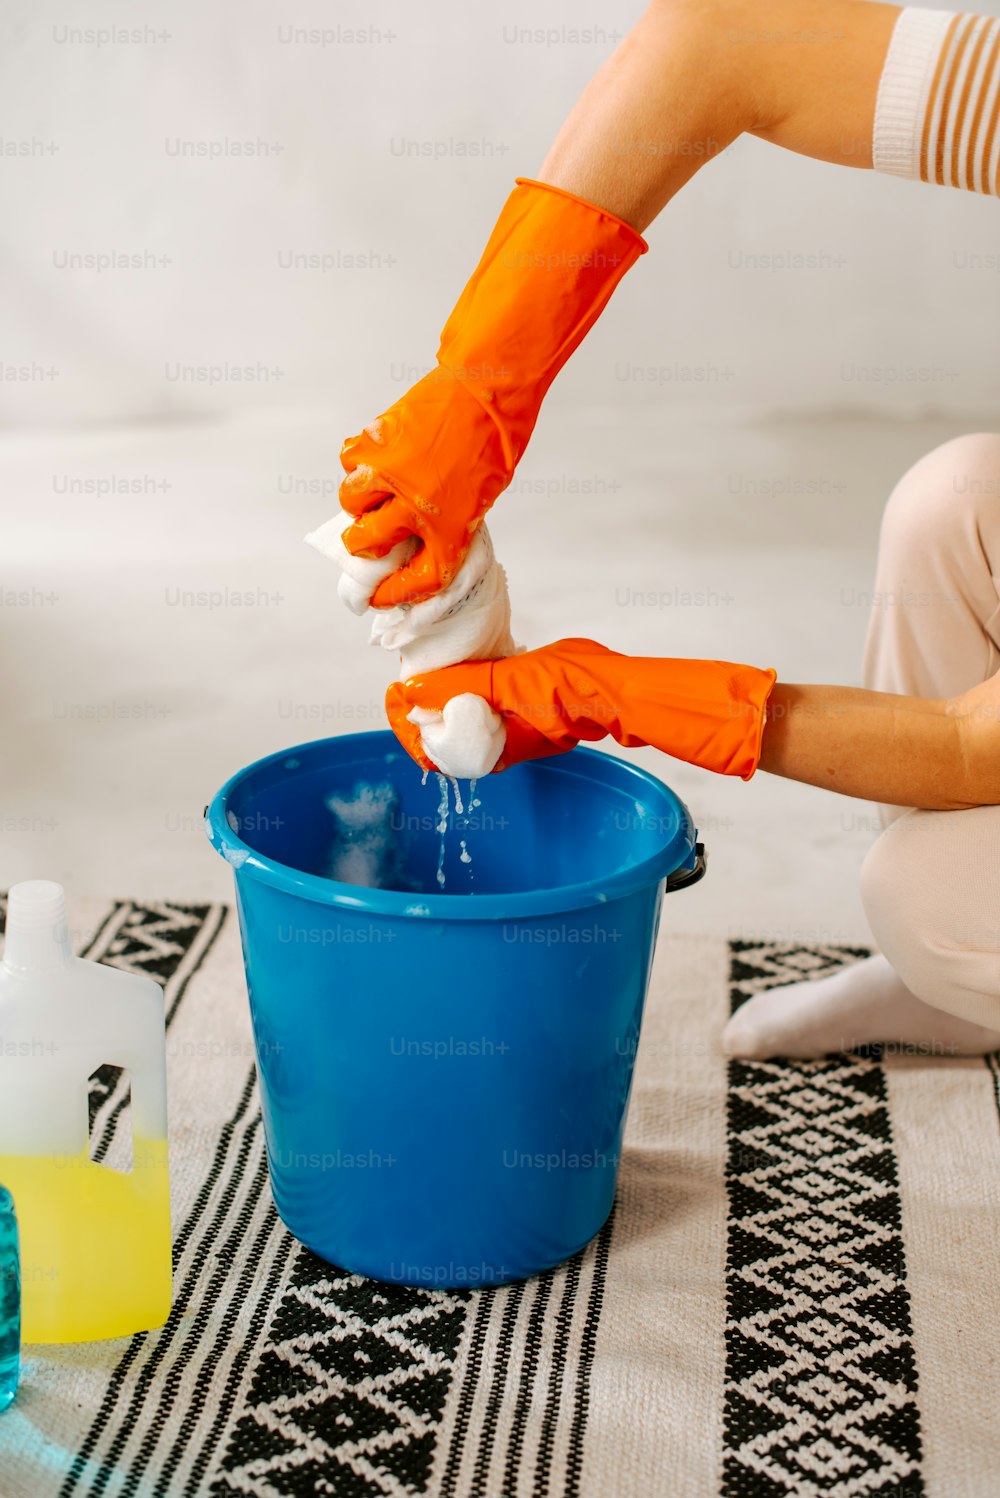 une personne portant des gants orange nettoie un seau bleu